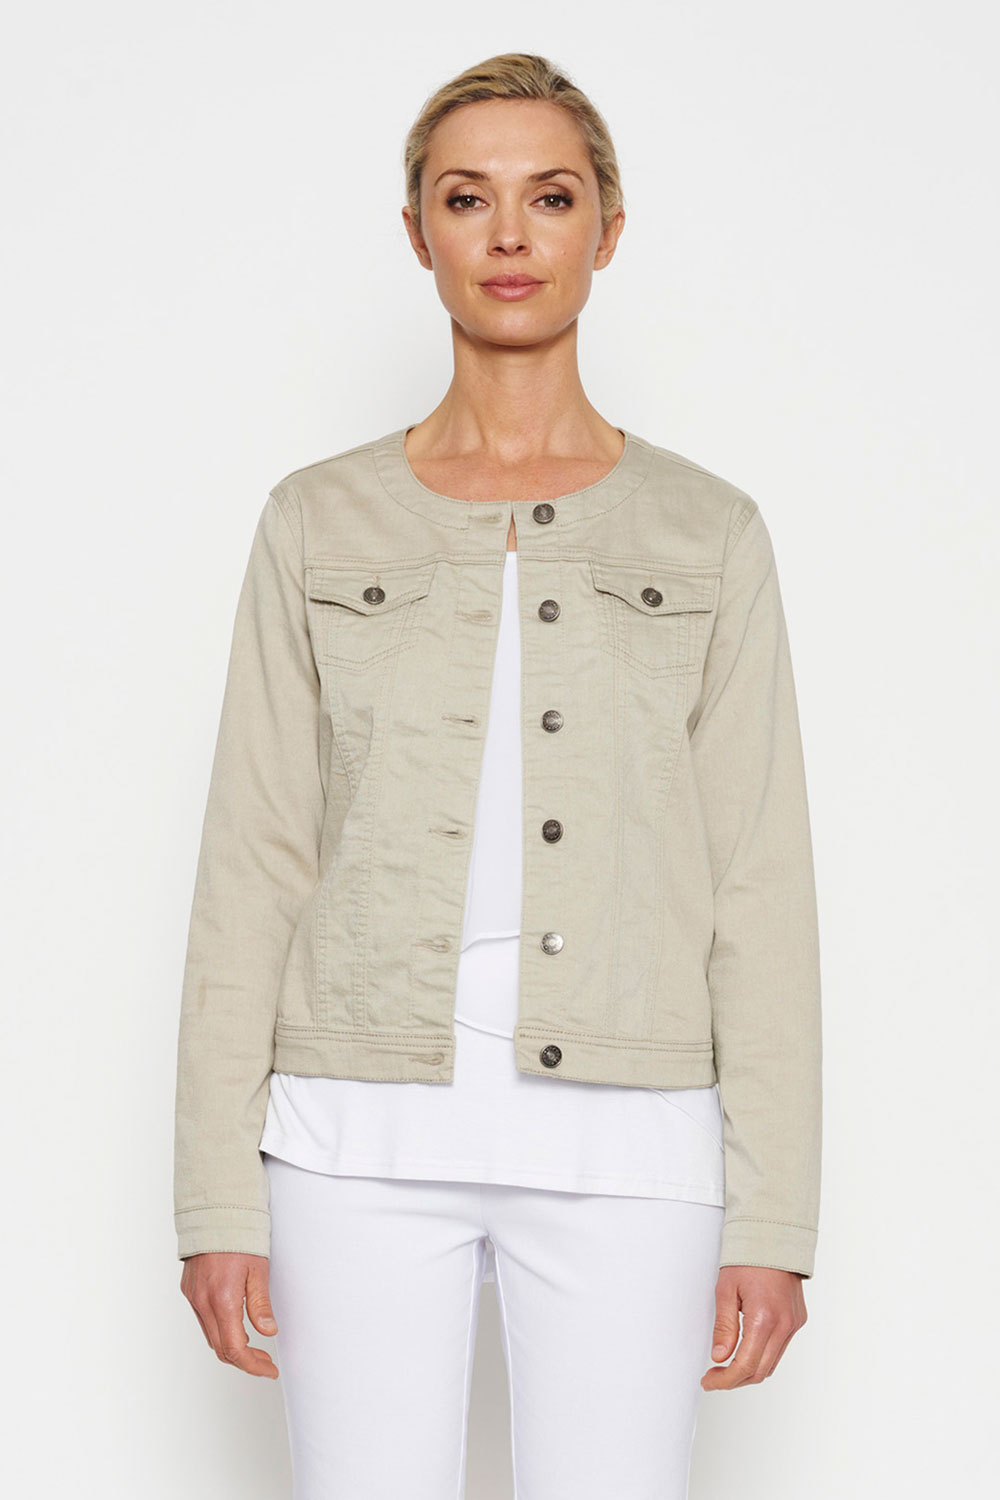 NEW Threadz Womens Jackets Collarless Denim Jacket | eBay